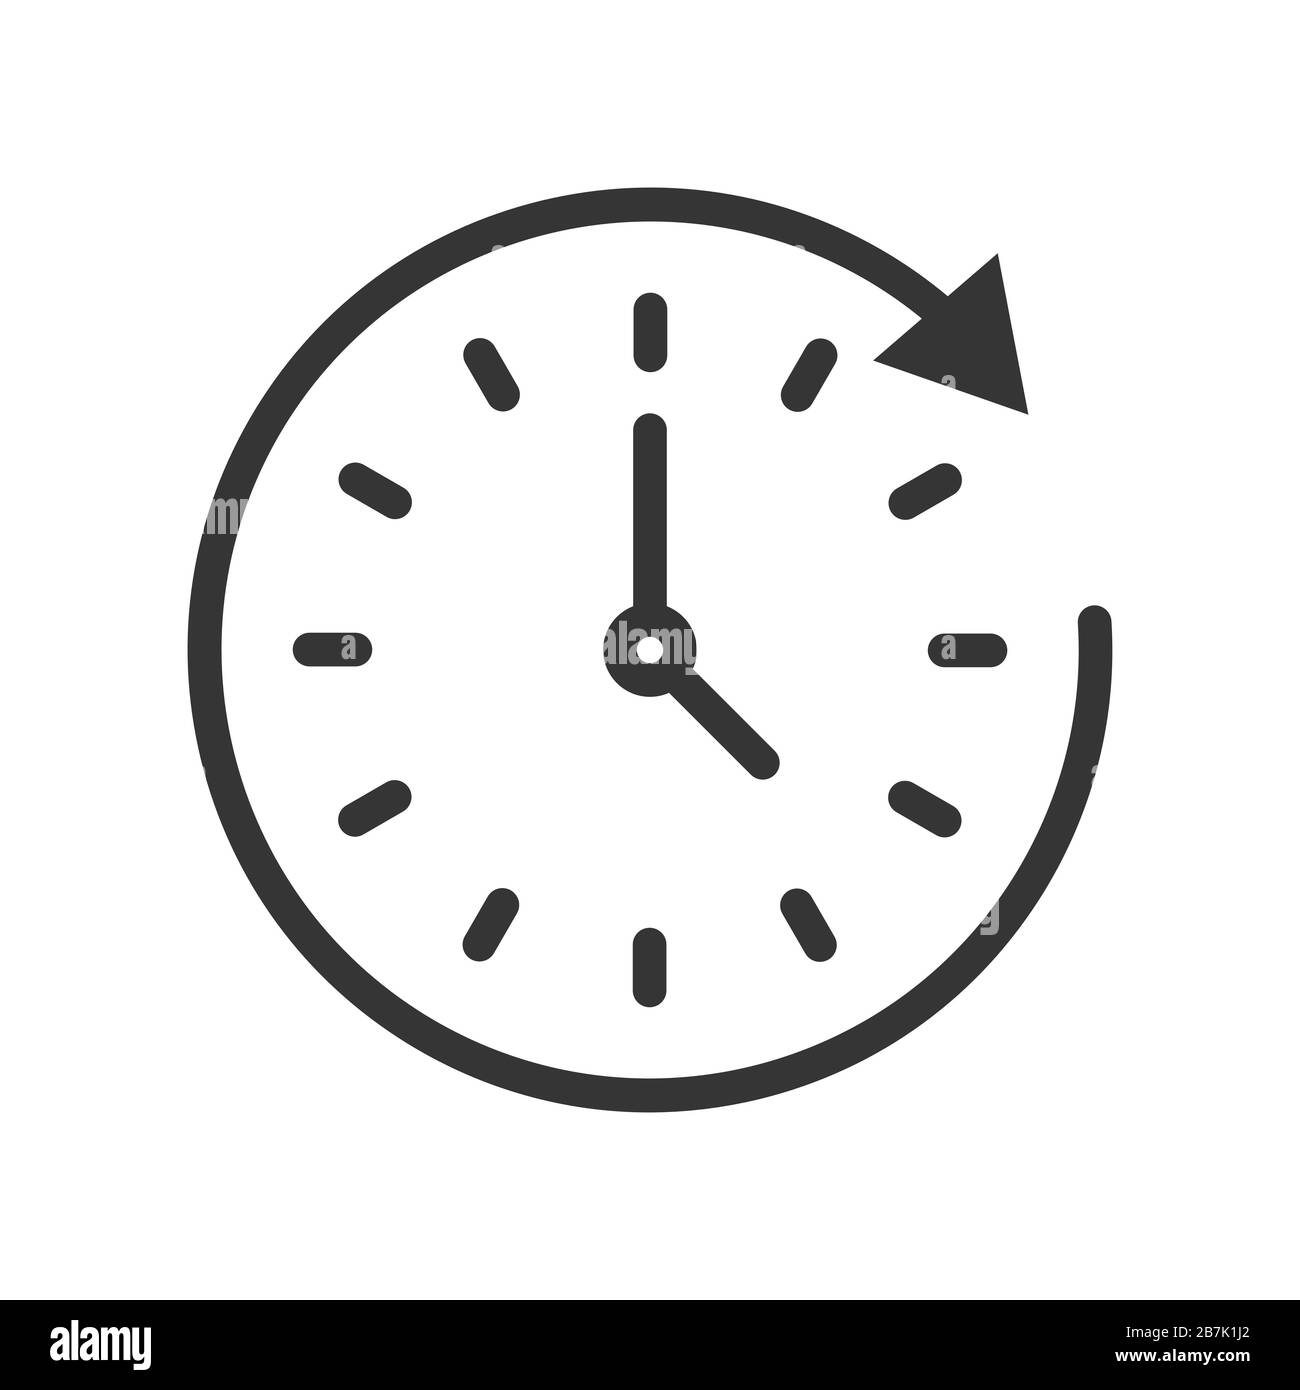 Icône de rotation dans le sens des aiguilles d'une montre en style ligne  fine. Passage du temps. Illustration vectorielle. Icône horloge linéaire  Image Vectorielle Stock - Alamy